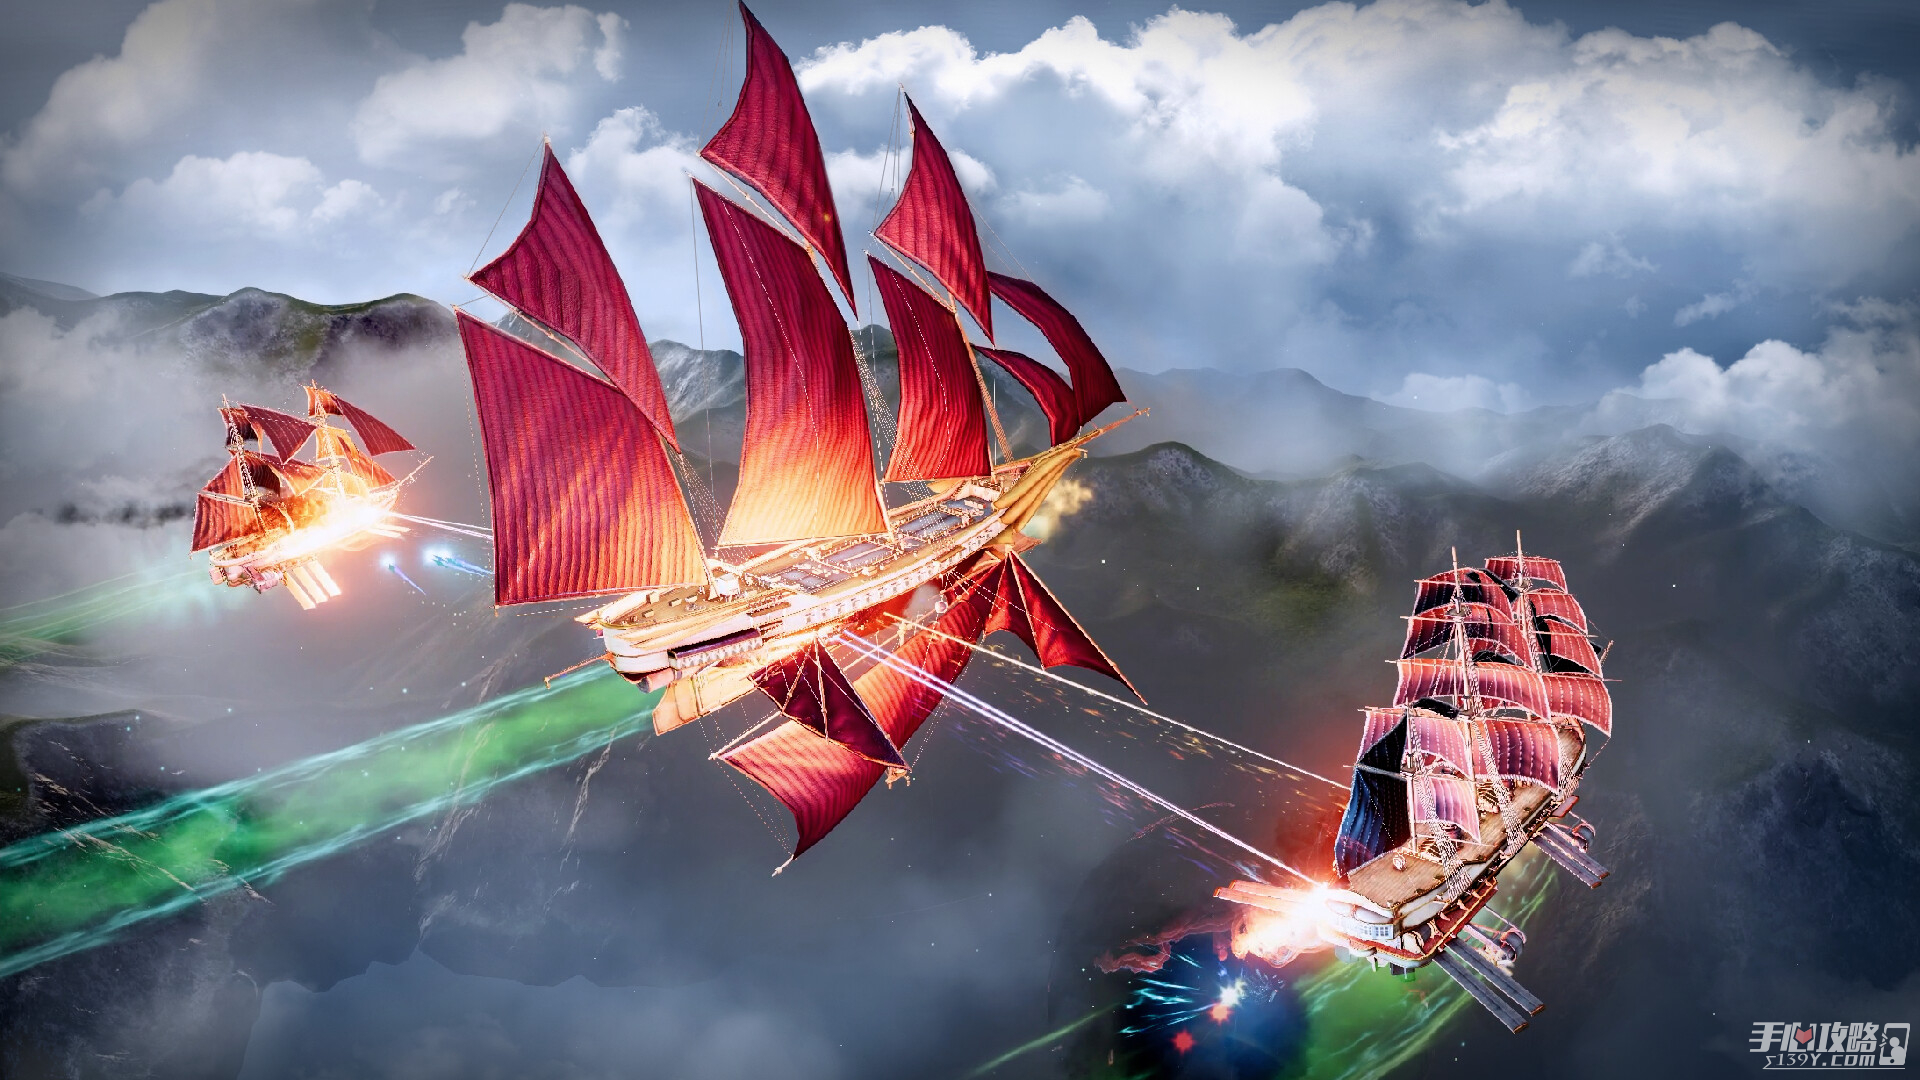 飞艇贸易和战斗模拟游戏《飞空艇时代：贸易帝国》上架steam